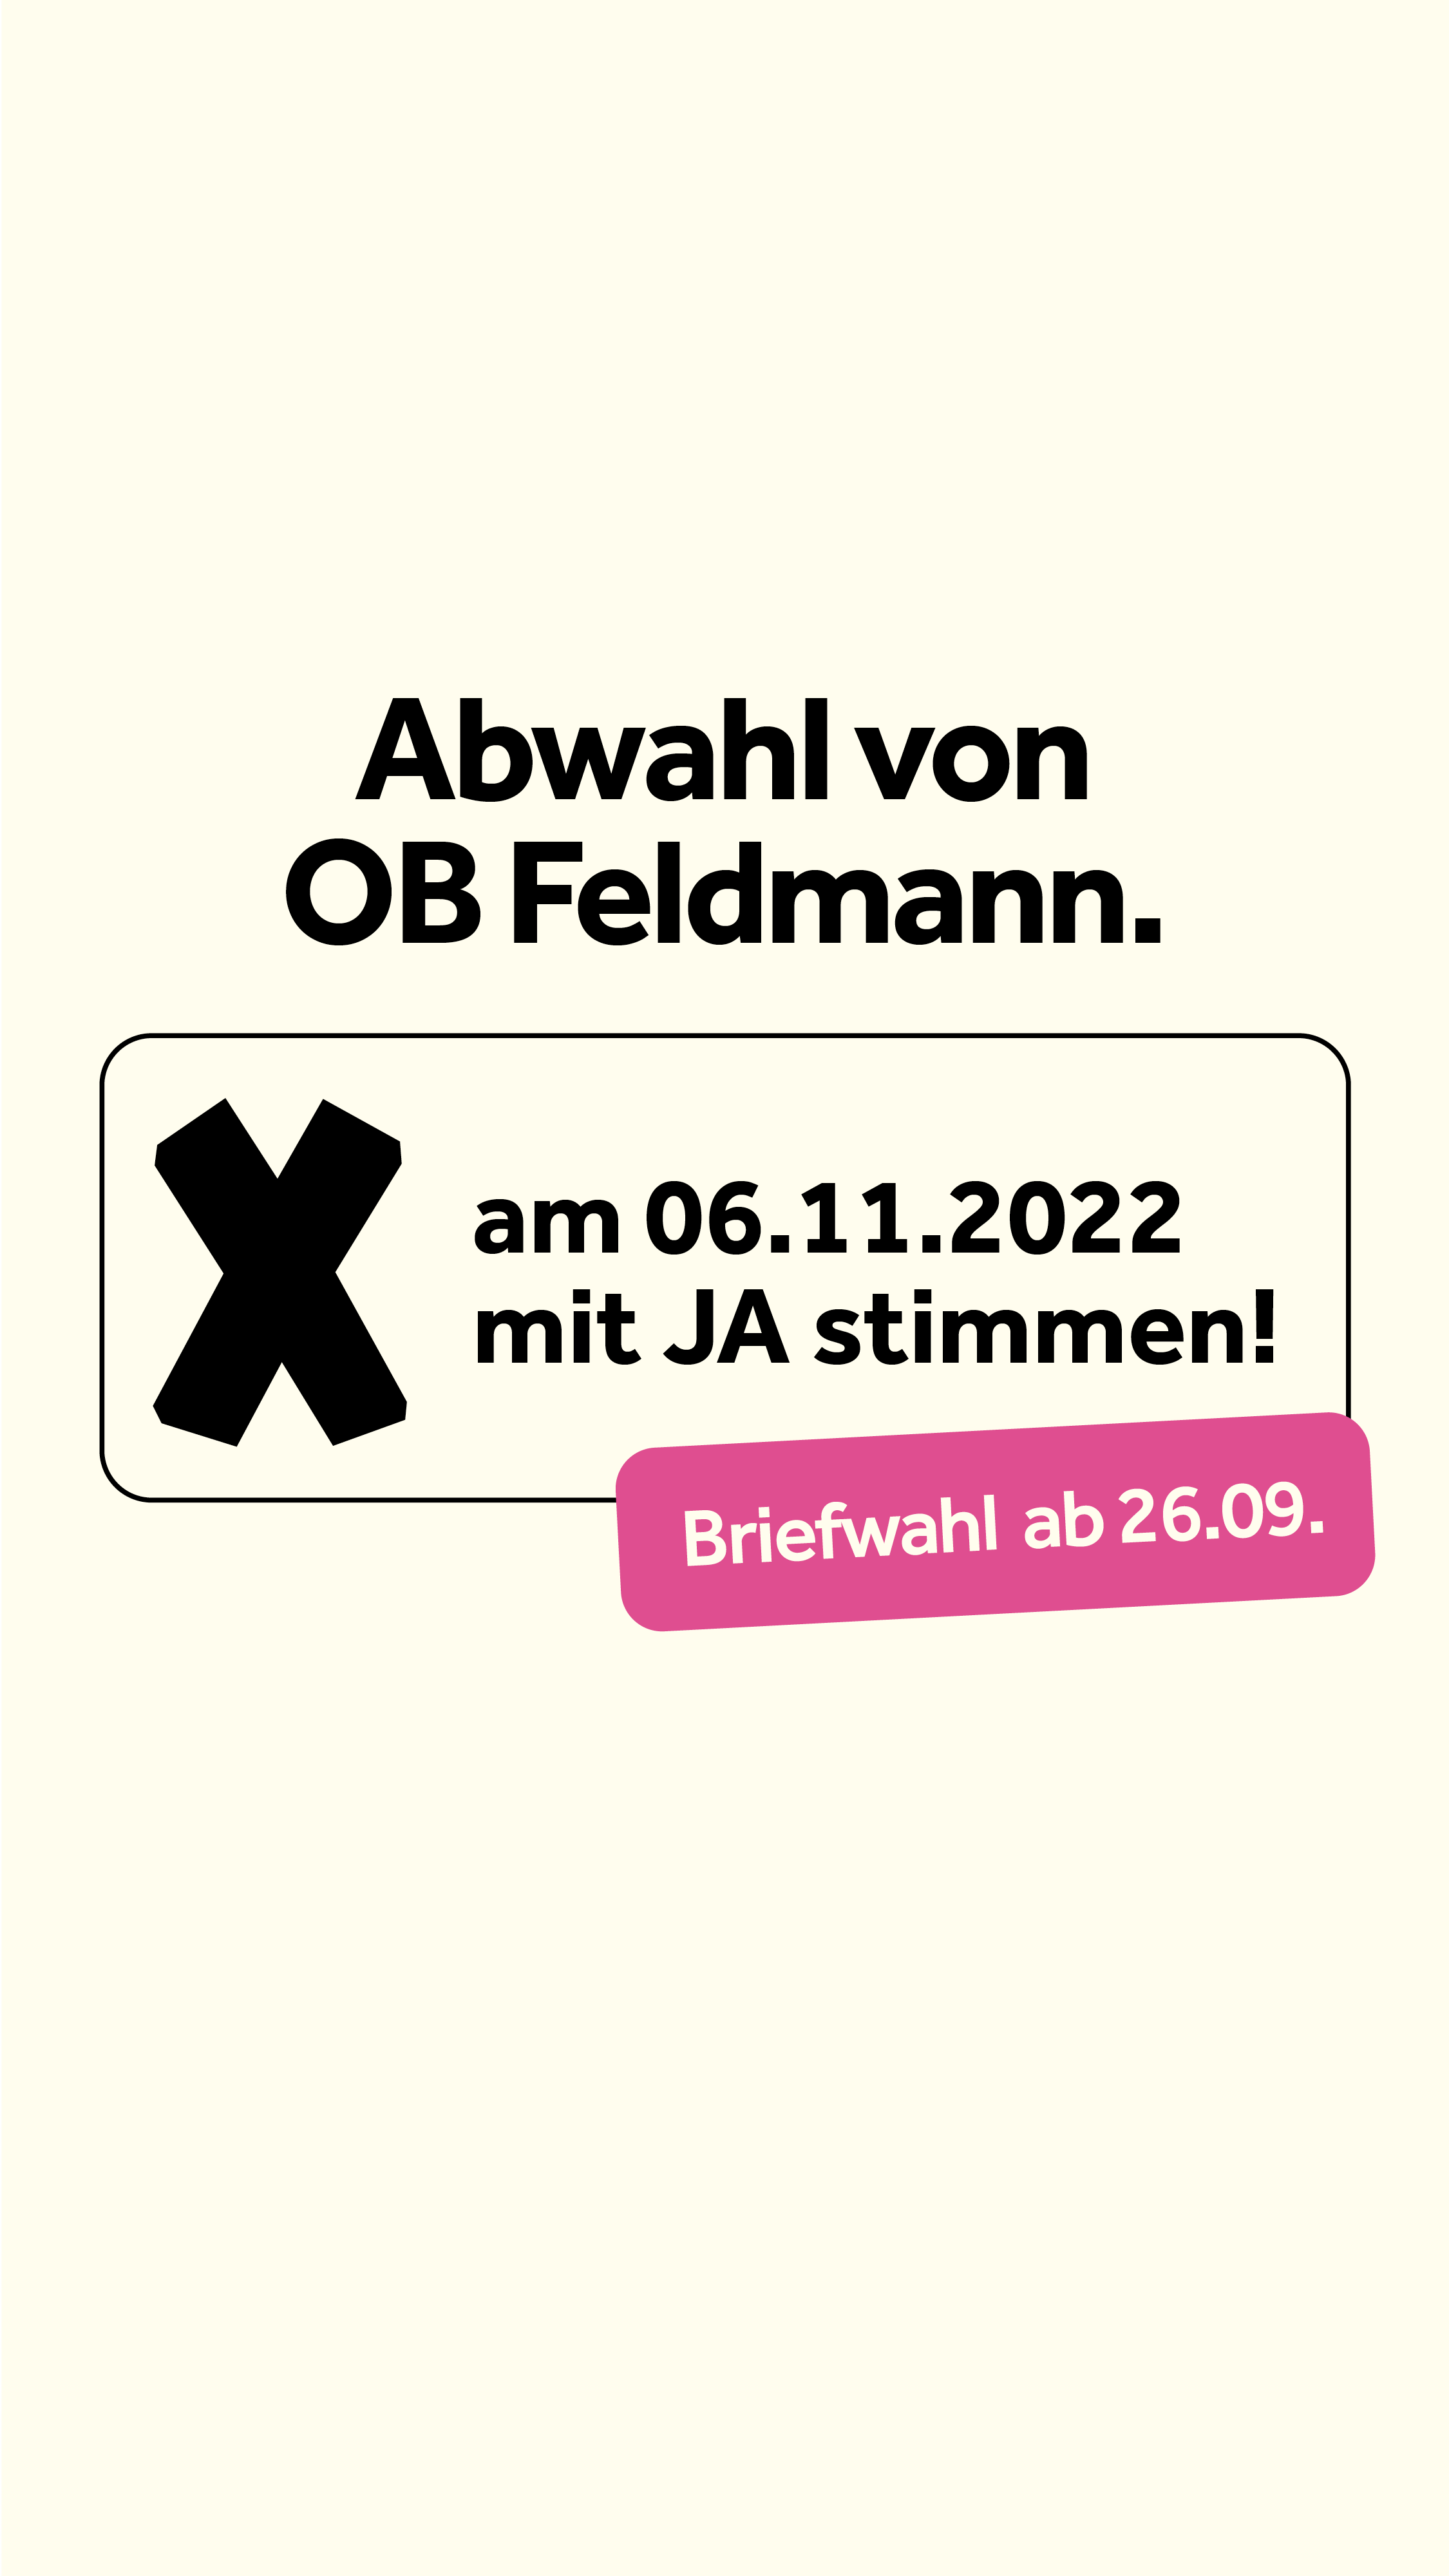 Abwahl von OB Feldmann! Am 06.11.2022 mit JA stimmen! — Briefwahl ab 26.09.